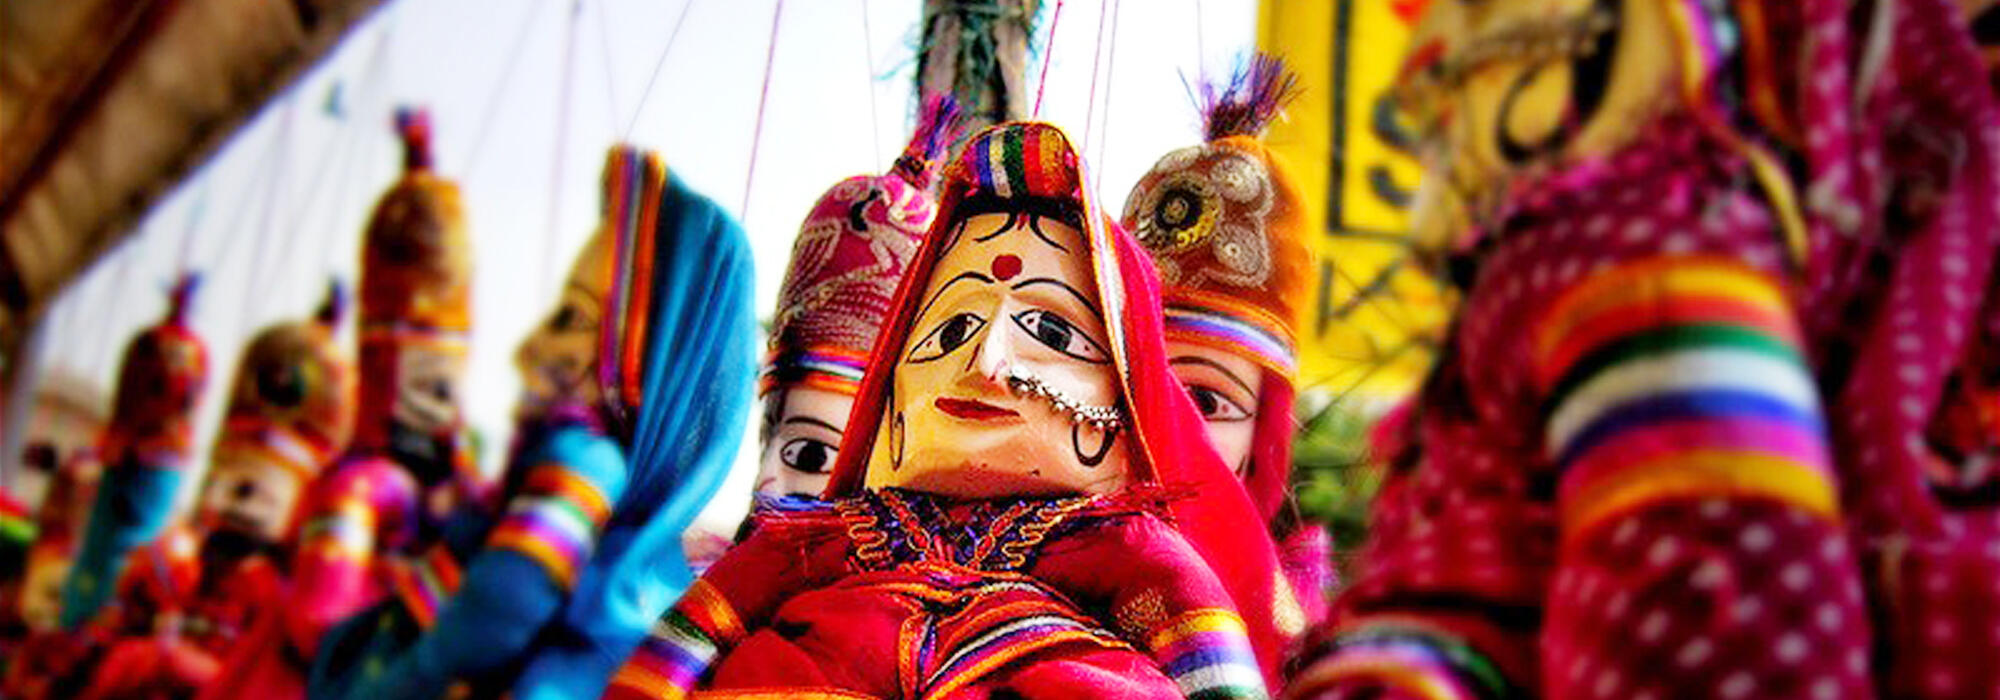 कठपुतली कला, राजस्थान की एक लोक परंपरा